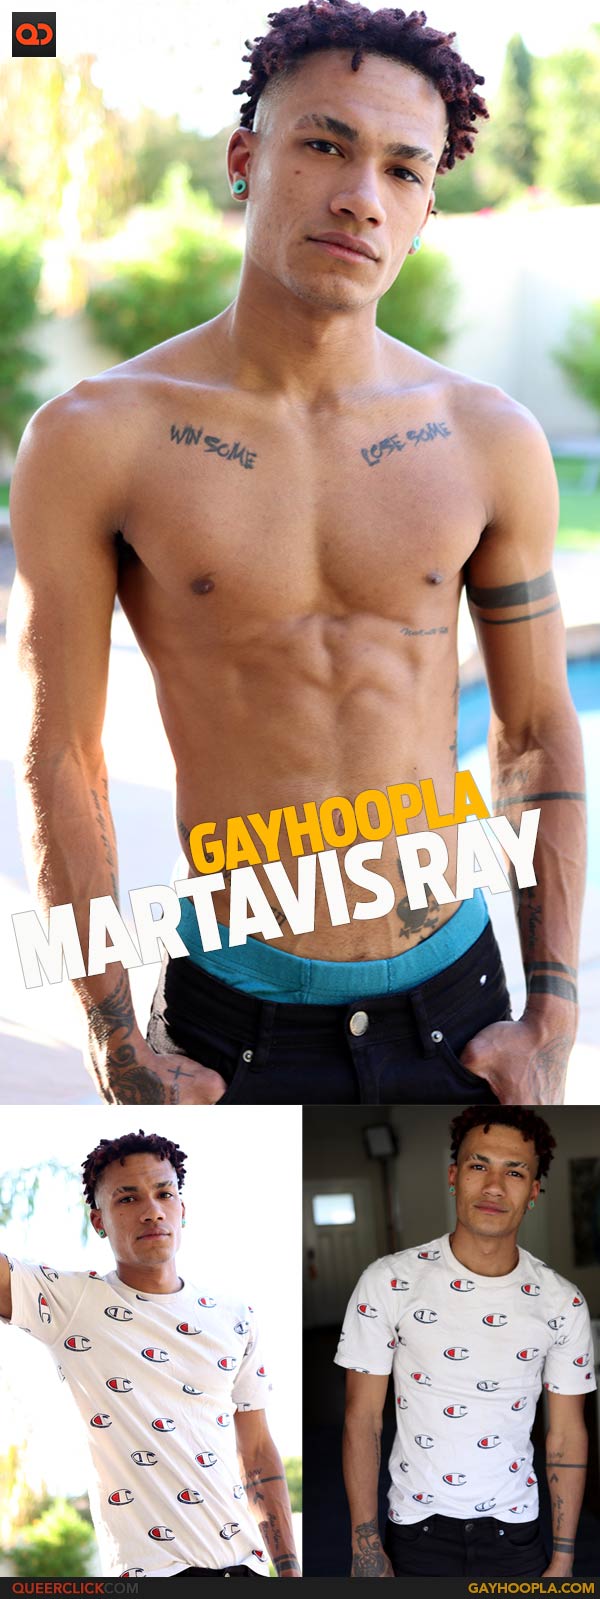 GayHoopla: Martavis Ray